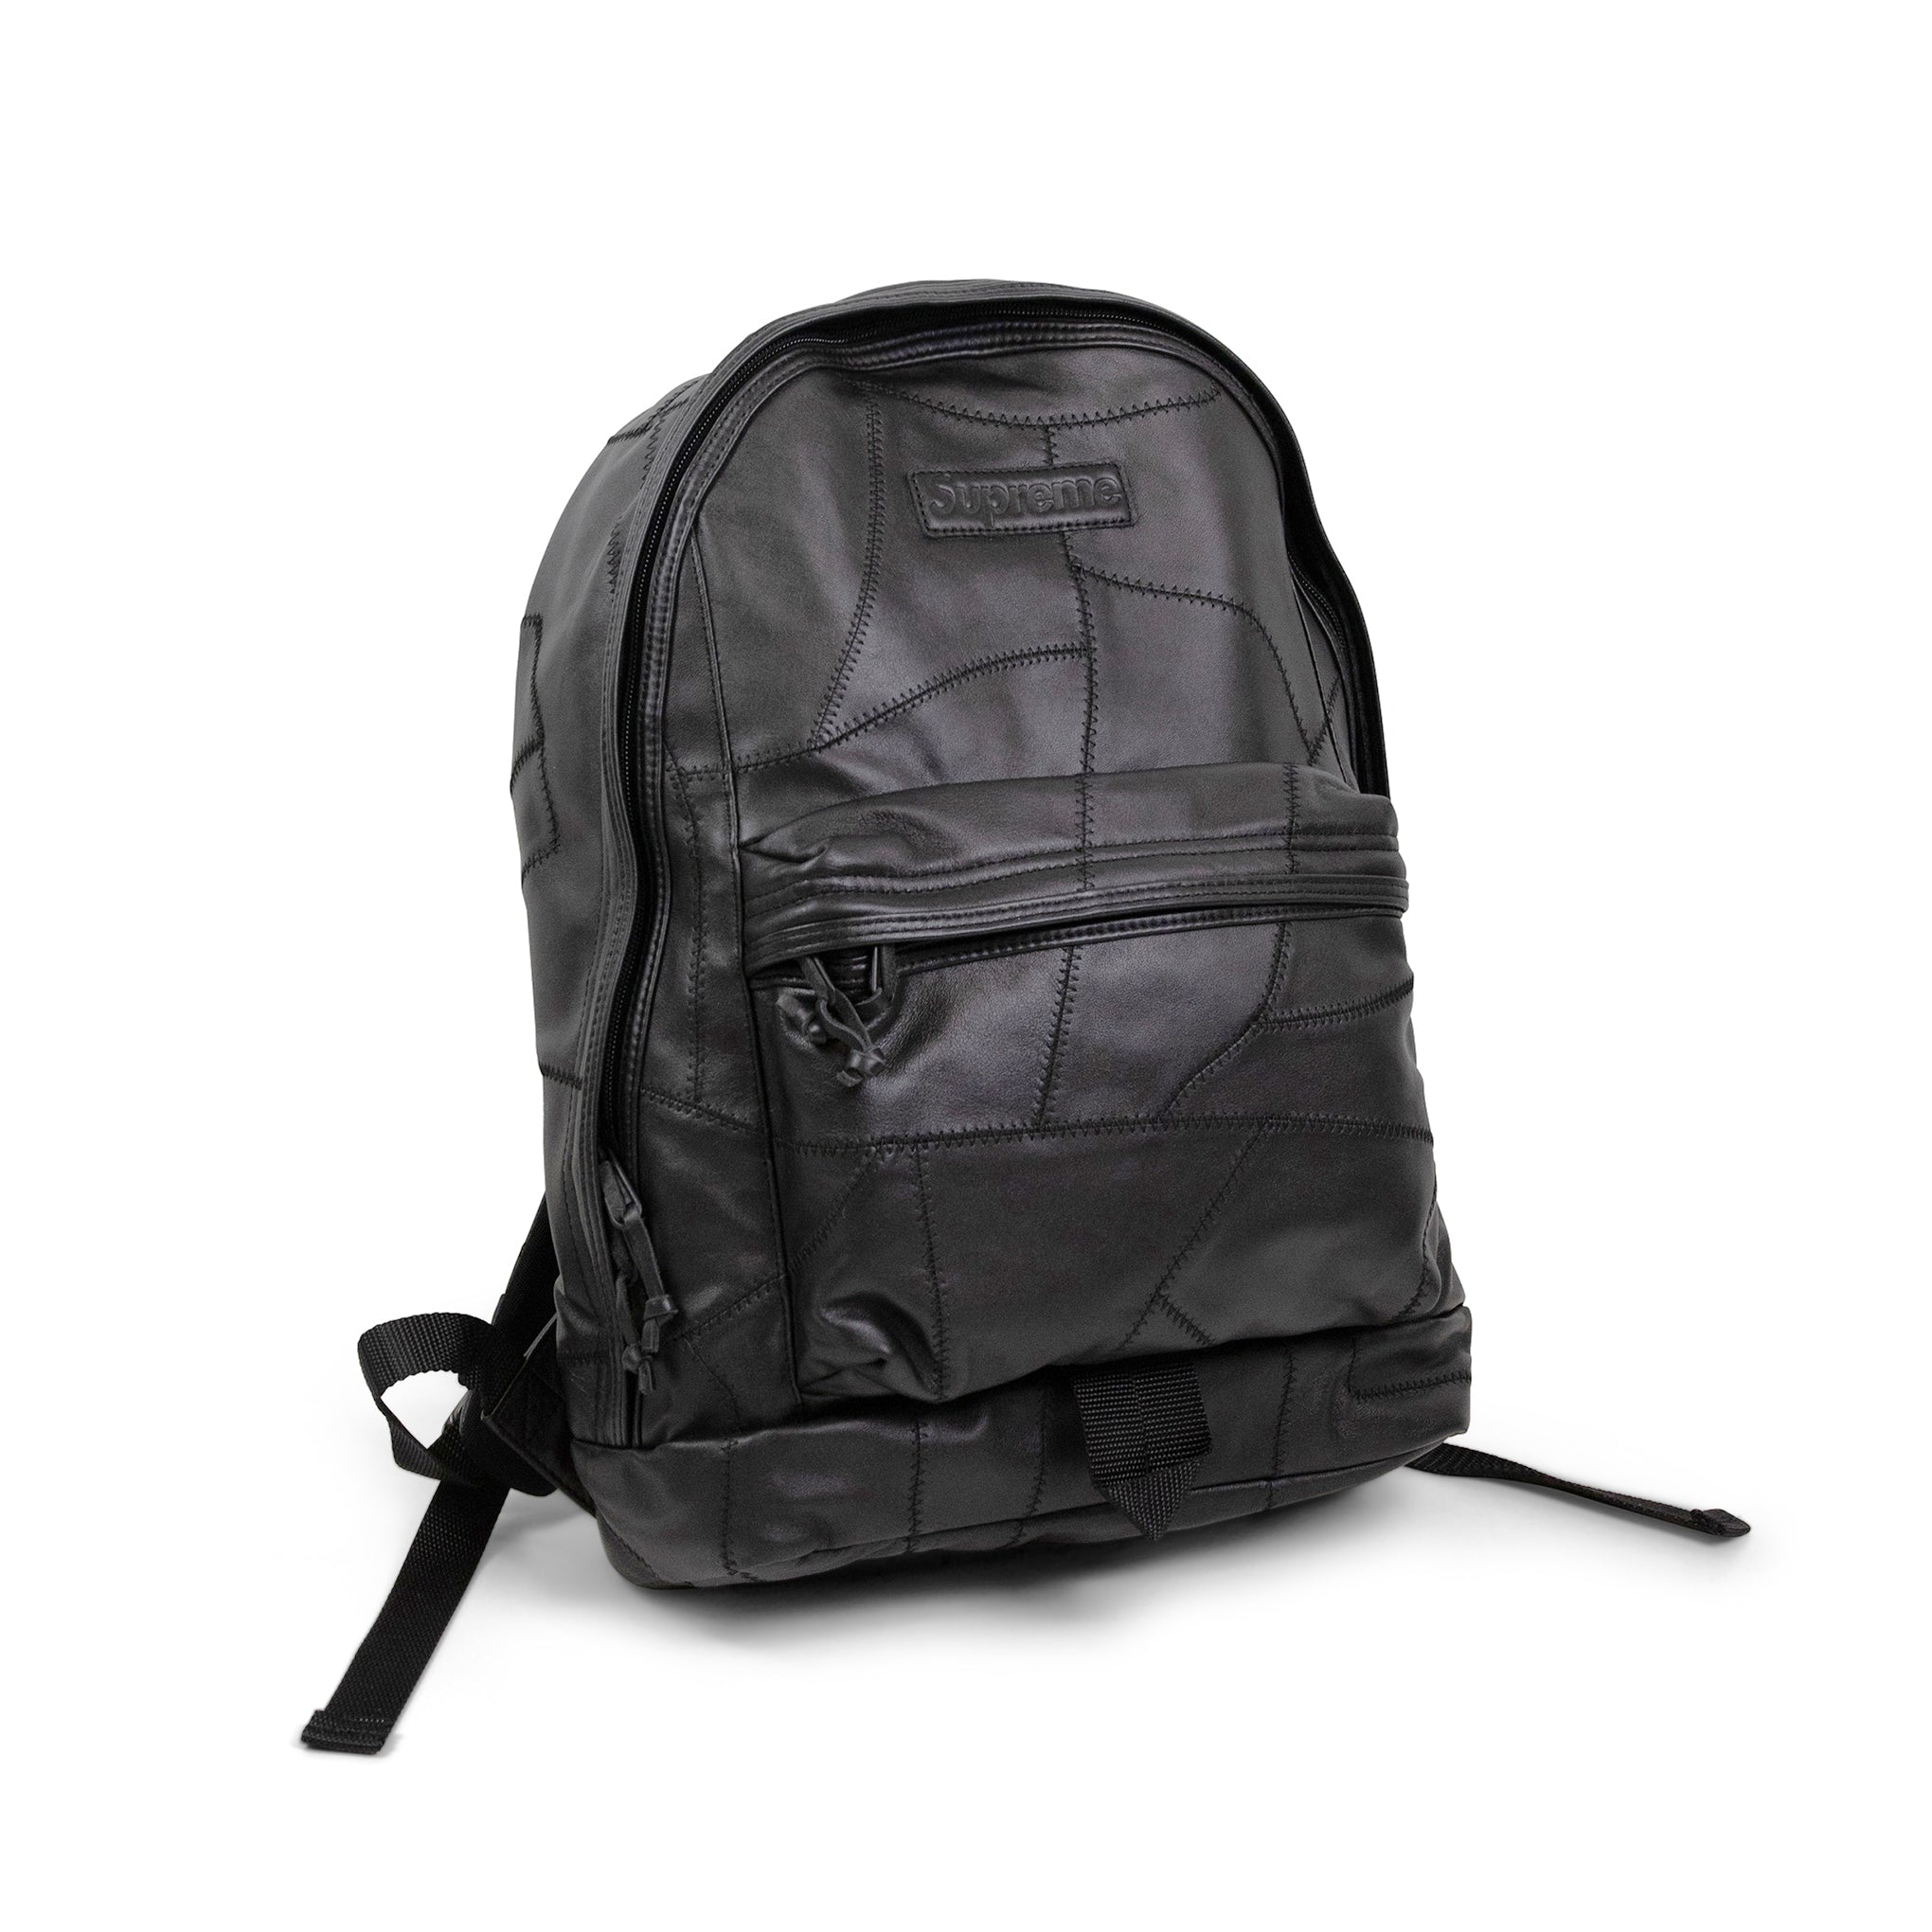 Supreme Patchwork Leather Backpack Black - Novelship